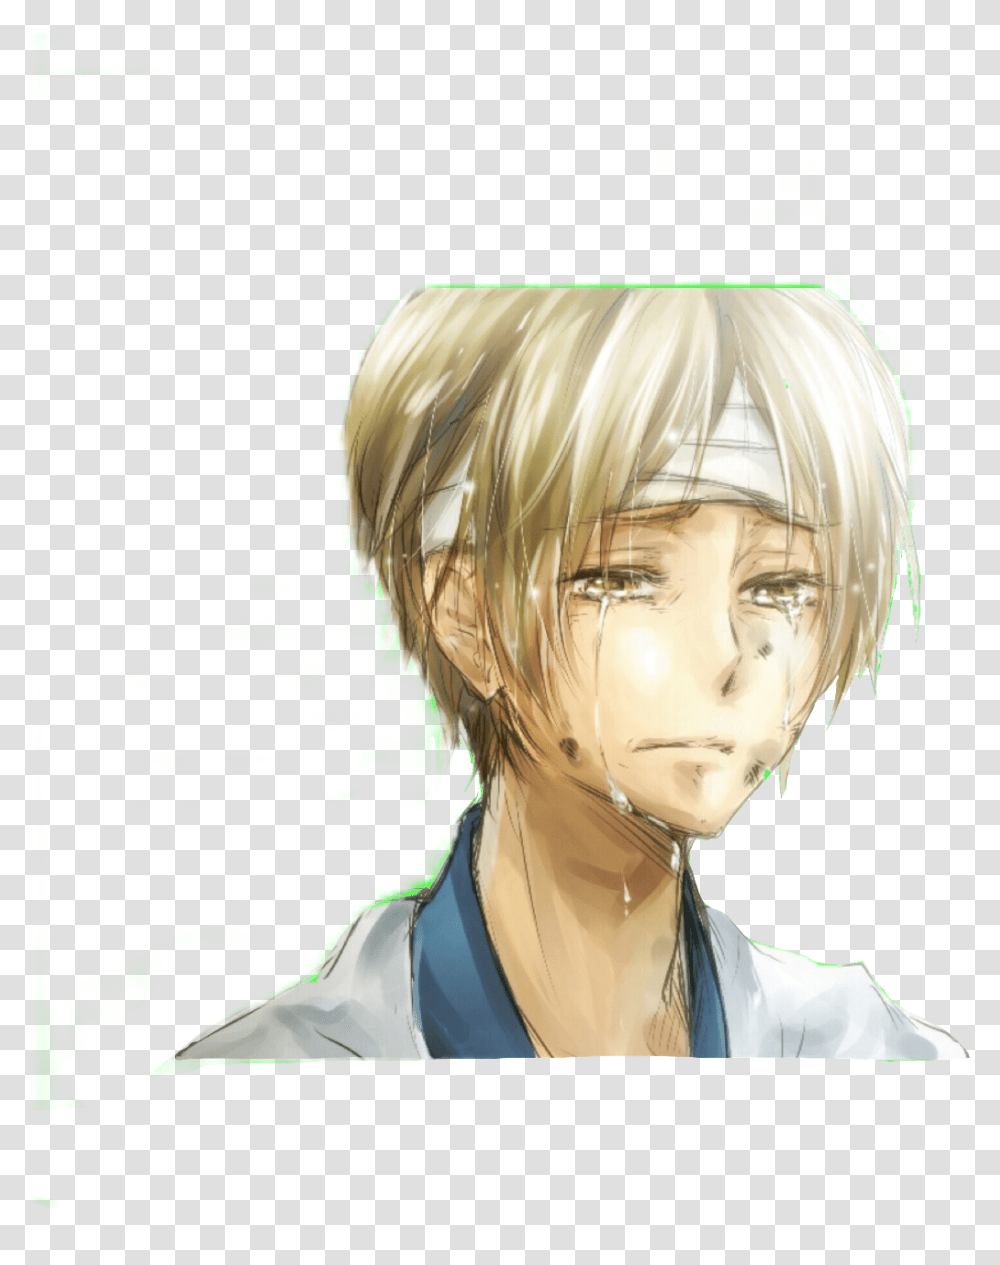 Natsume Sad Crying Anime Natsume Yuujinchou Natsume Hurt, Person, Human, Final Fantasy Transparent Png